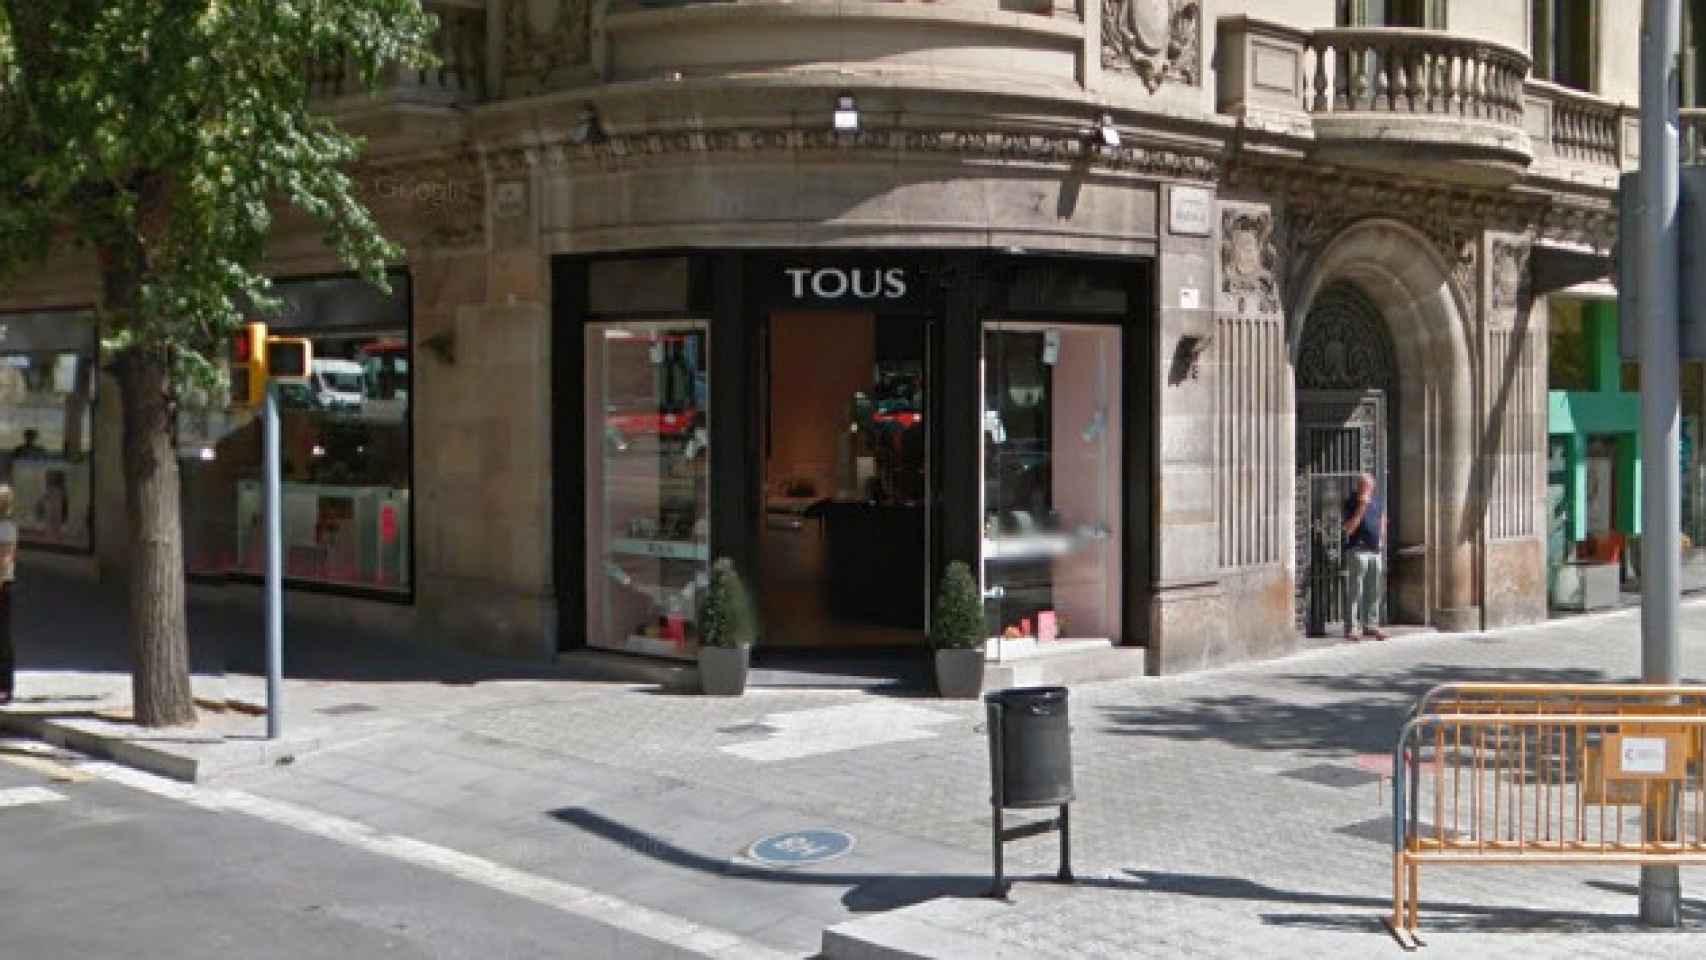 Tienda de Tous en Barcelona / CG